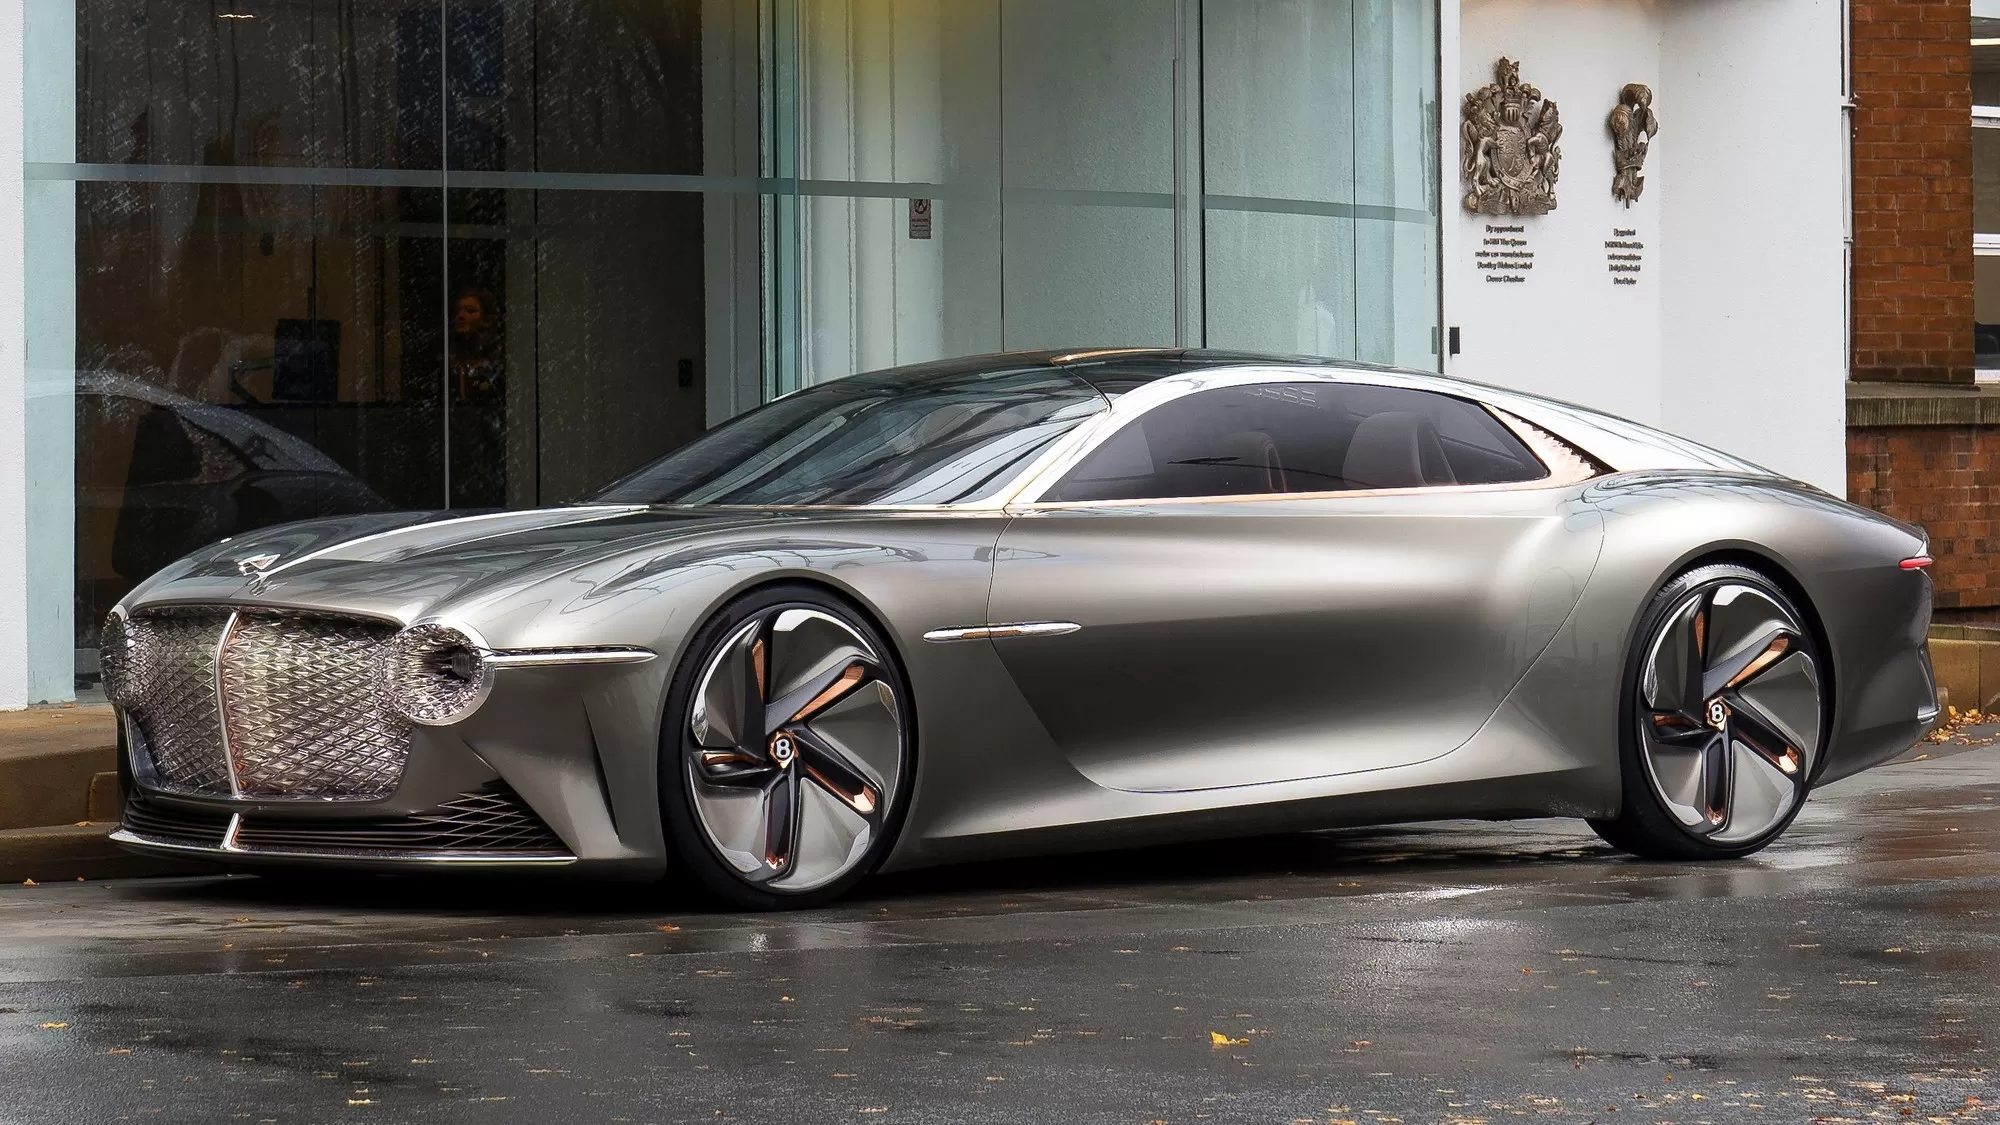 Bentley строит «фабрику грёз» за 2,5 млрд фунтов, первый электромобиль — в 2025 году